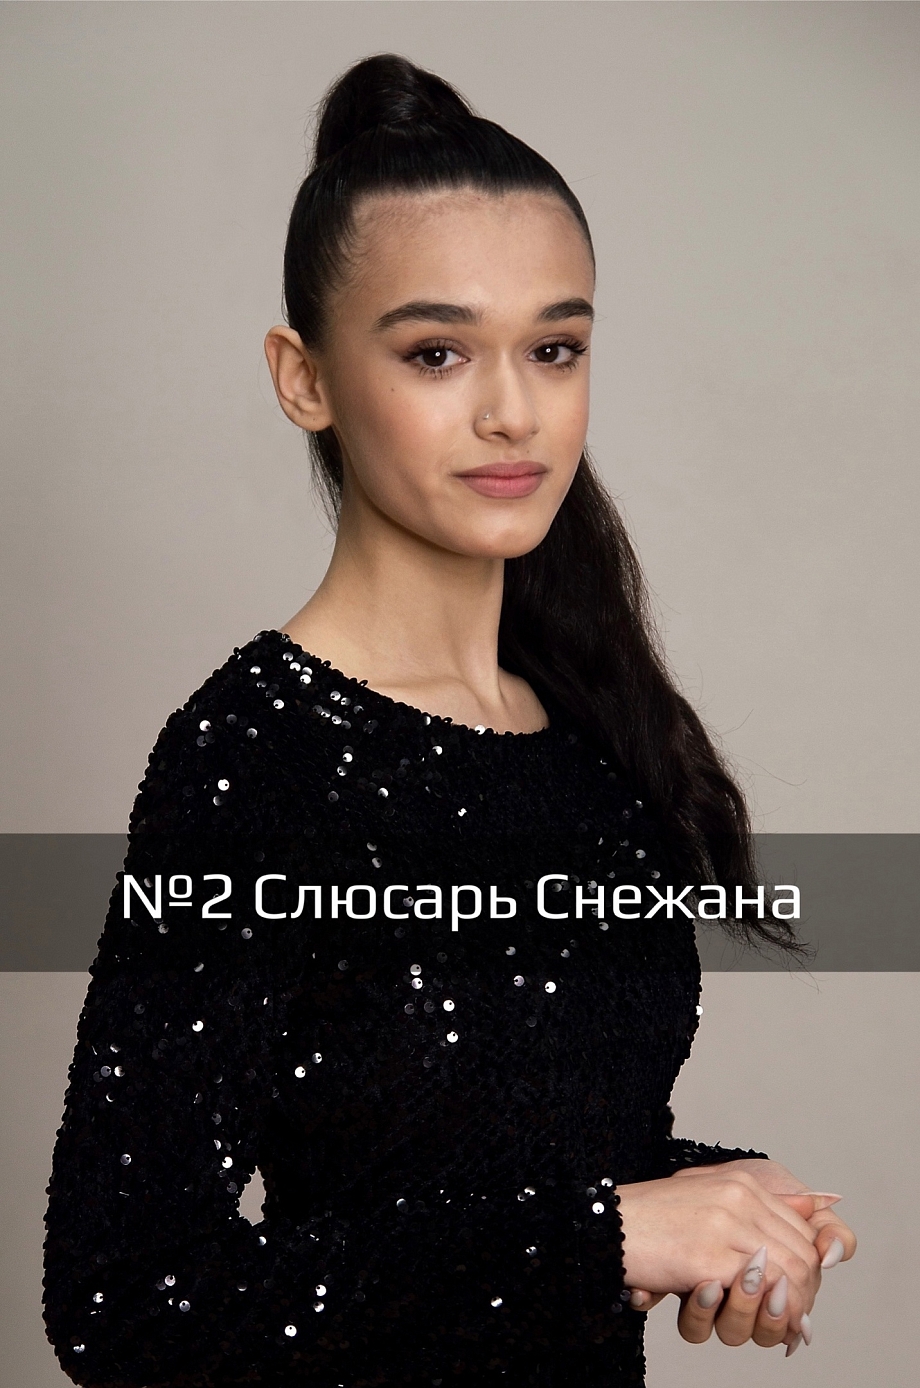 В финал конкурса «Супермодель Татарстана» вышли 17 девушек (фото)